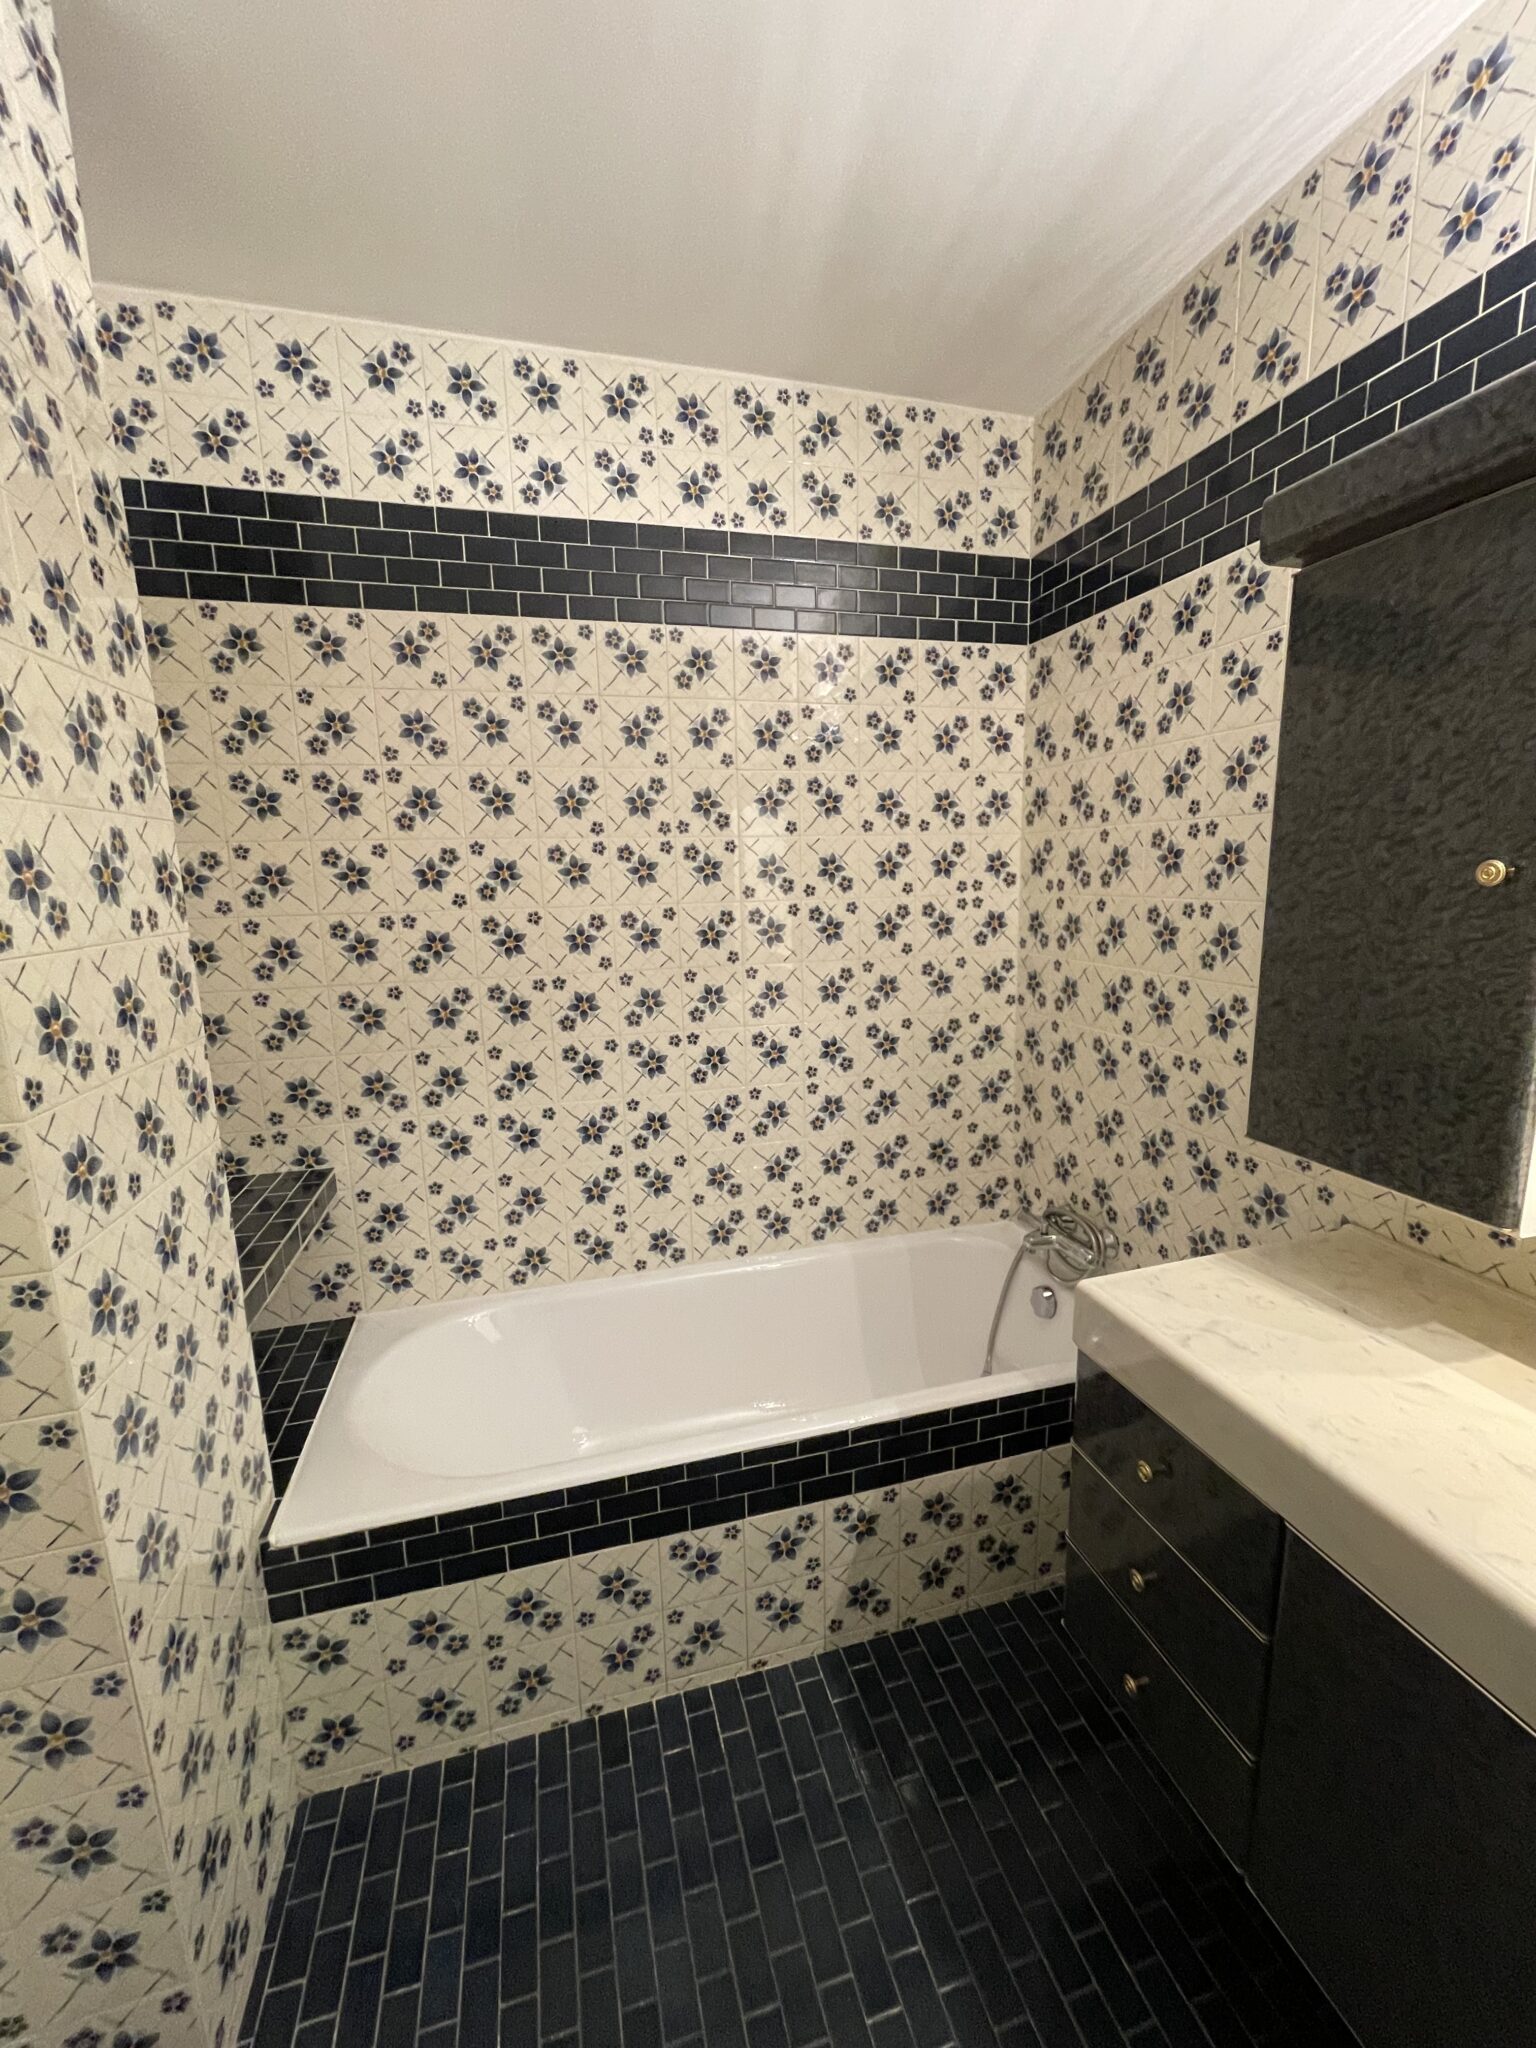 Baignoire bleu et blanche dans une salle de bain